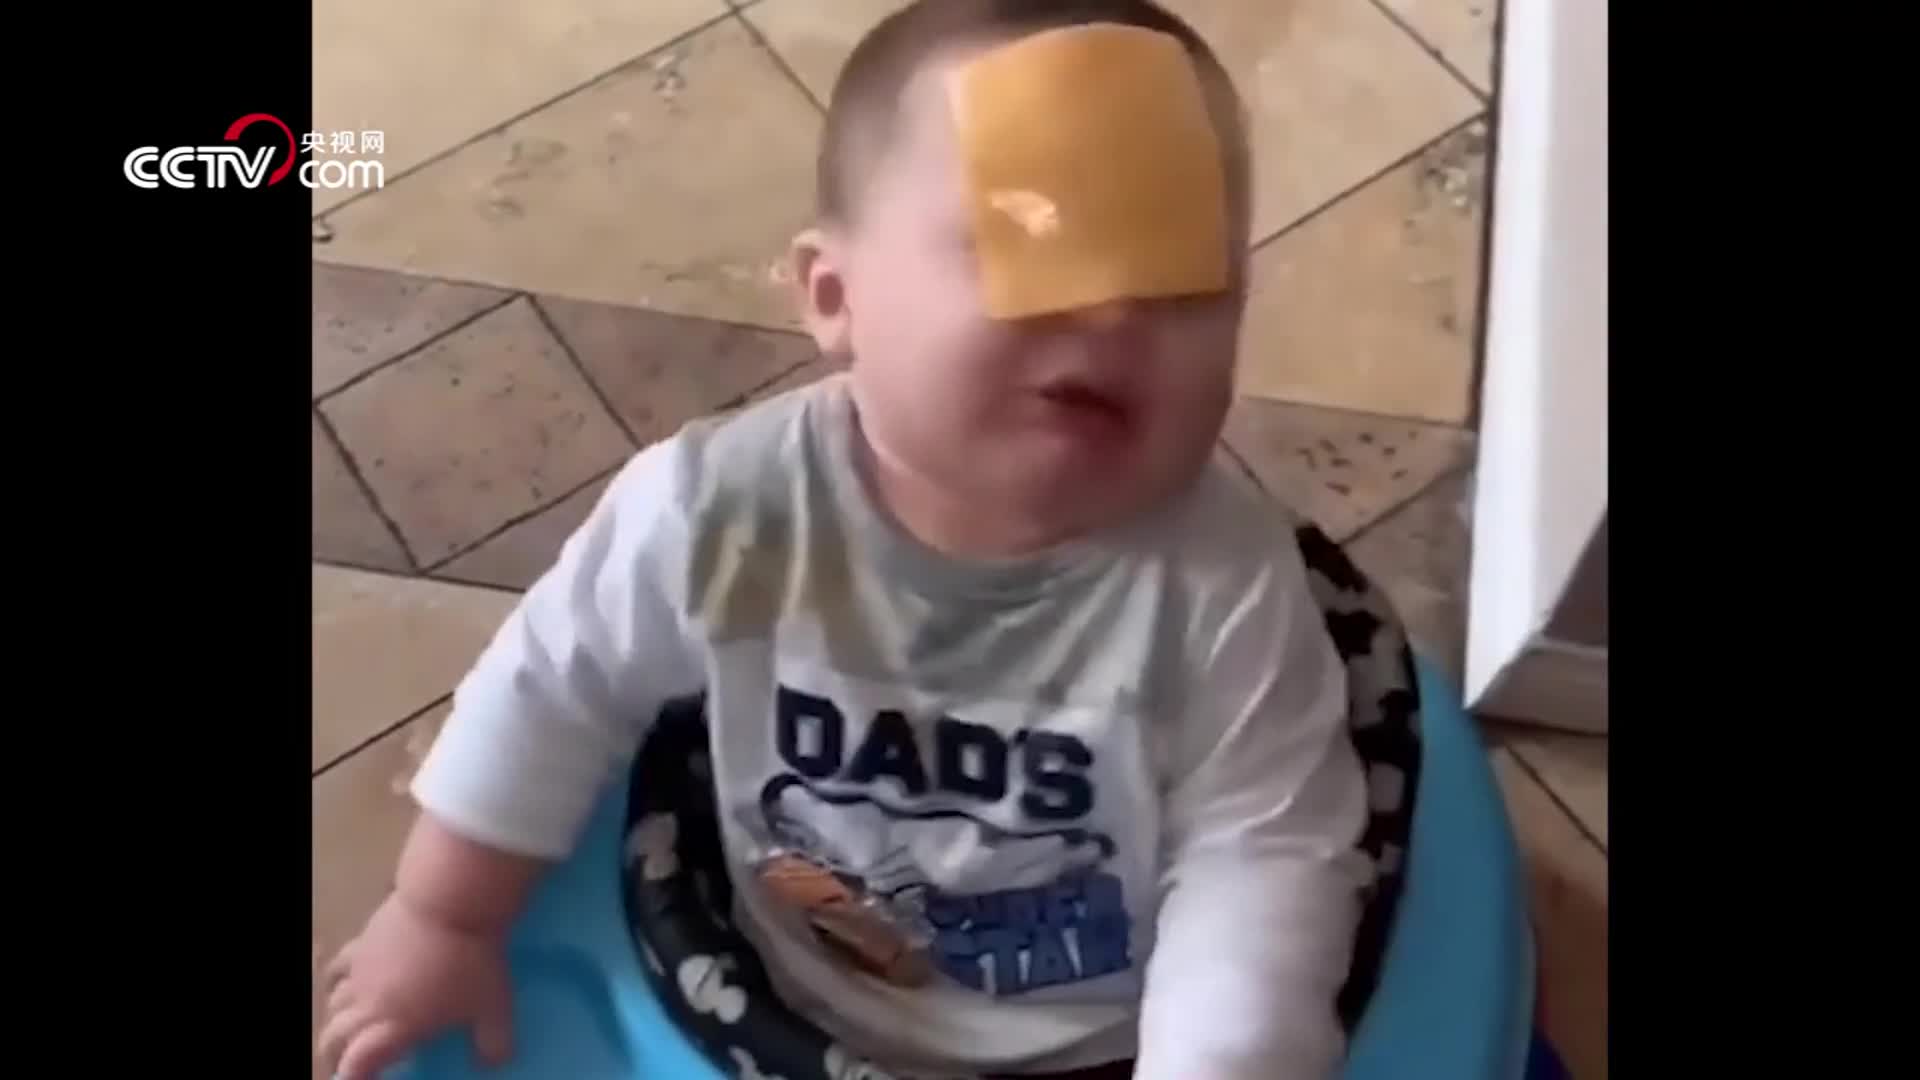 [视频]“奶酪挑战”风靡国外社交网络 父母纷纷往婴儿脸上抛奶酪